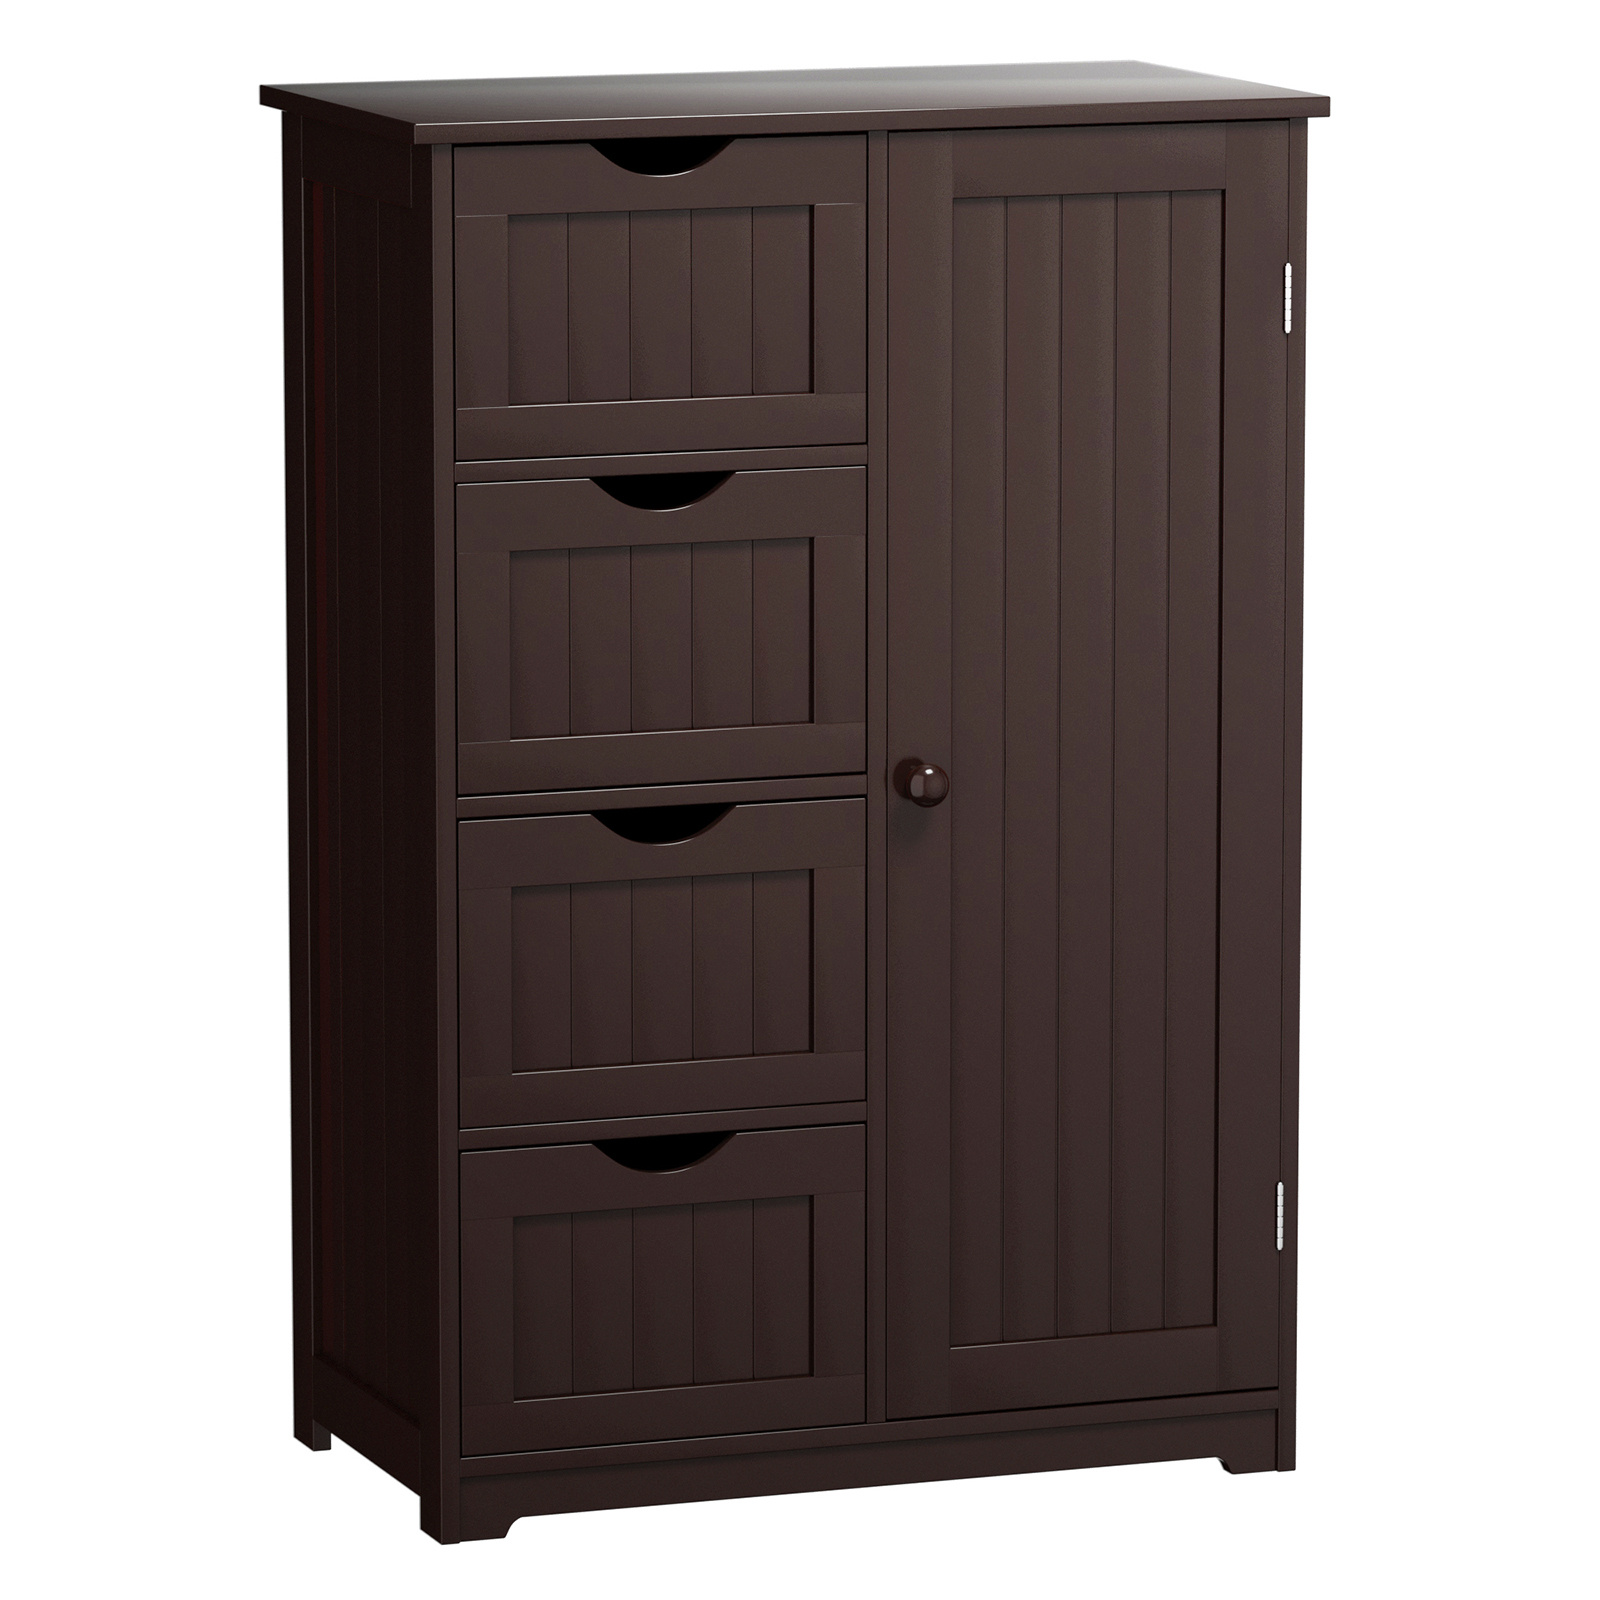 

Lifezeal Wooden 4 drawer free standing bathroom floor cabinet adjustable storage Cupboard